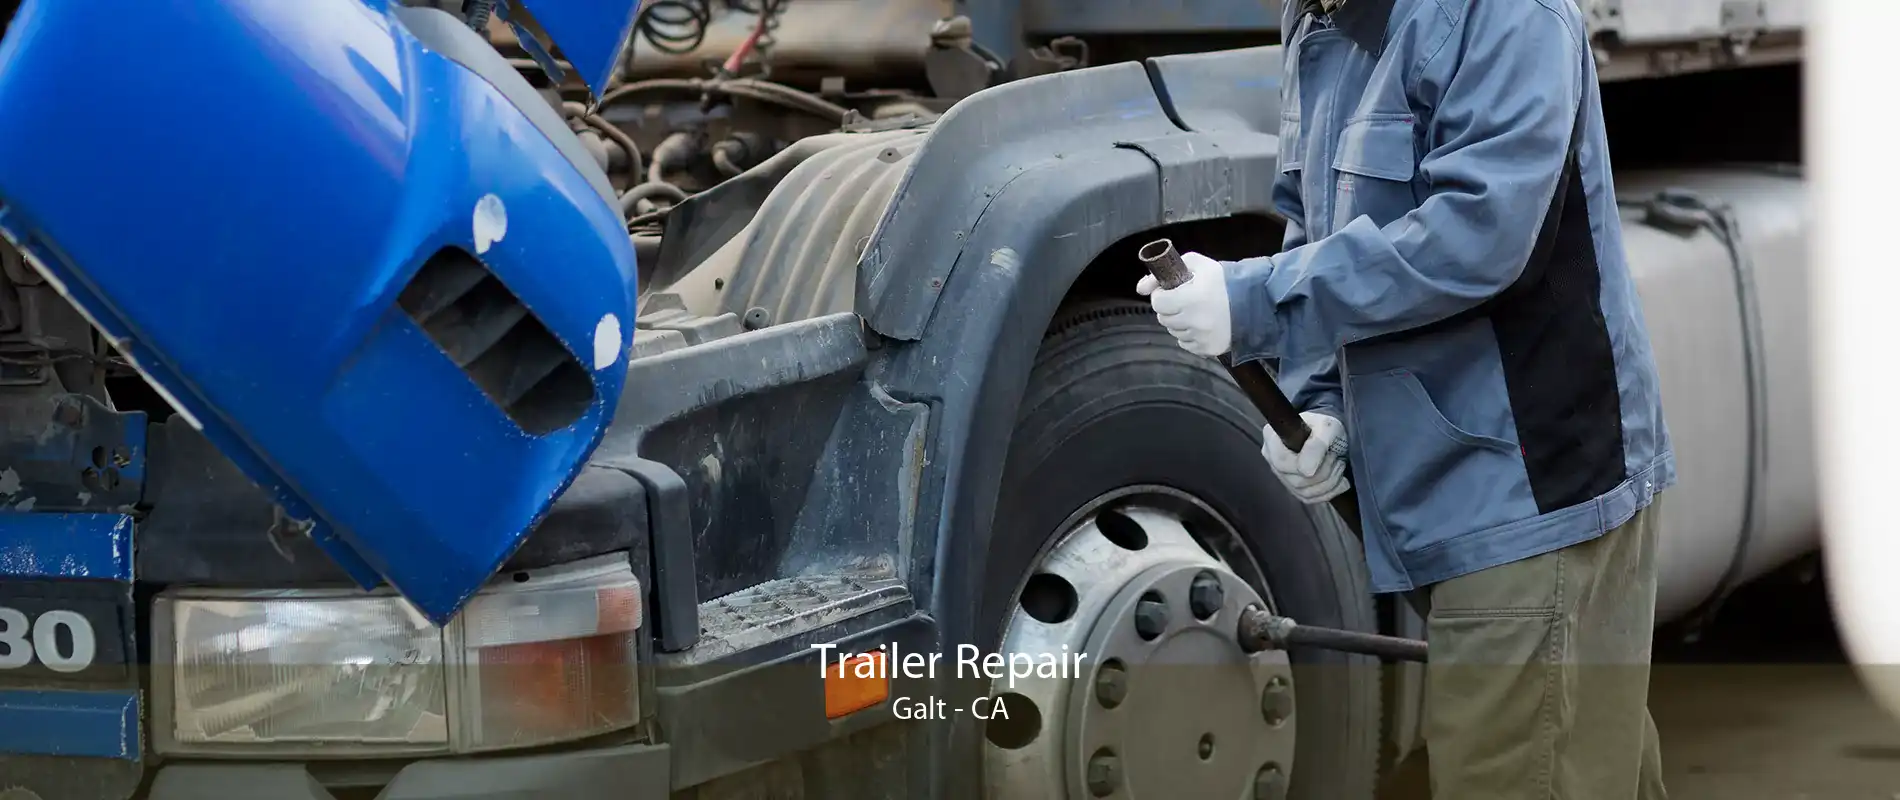 Trailer Repair Galt - CA